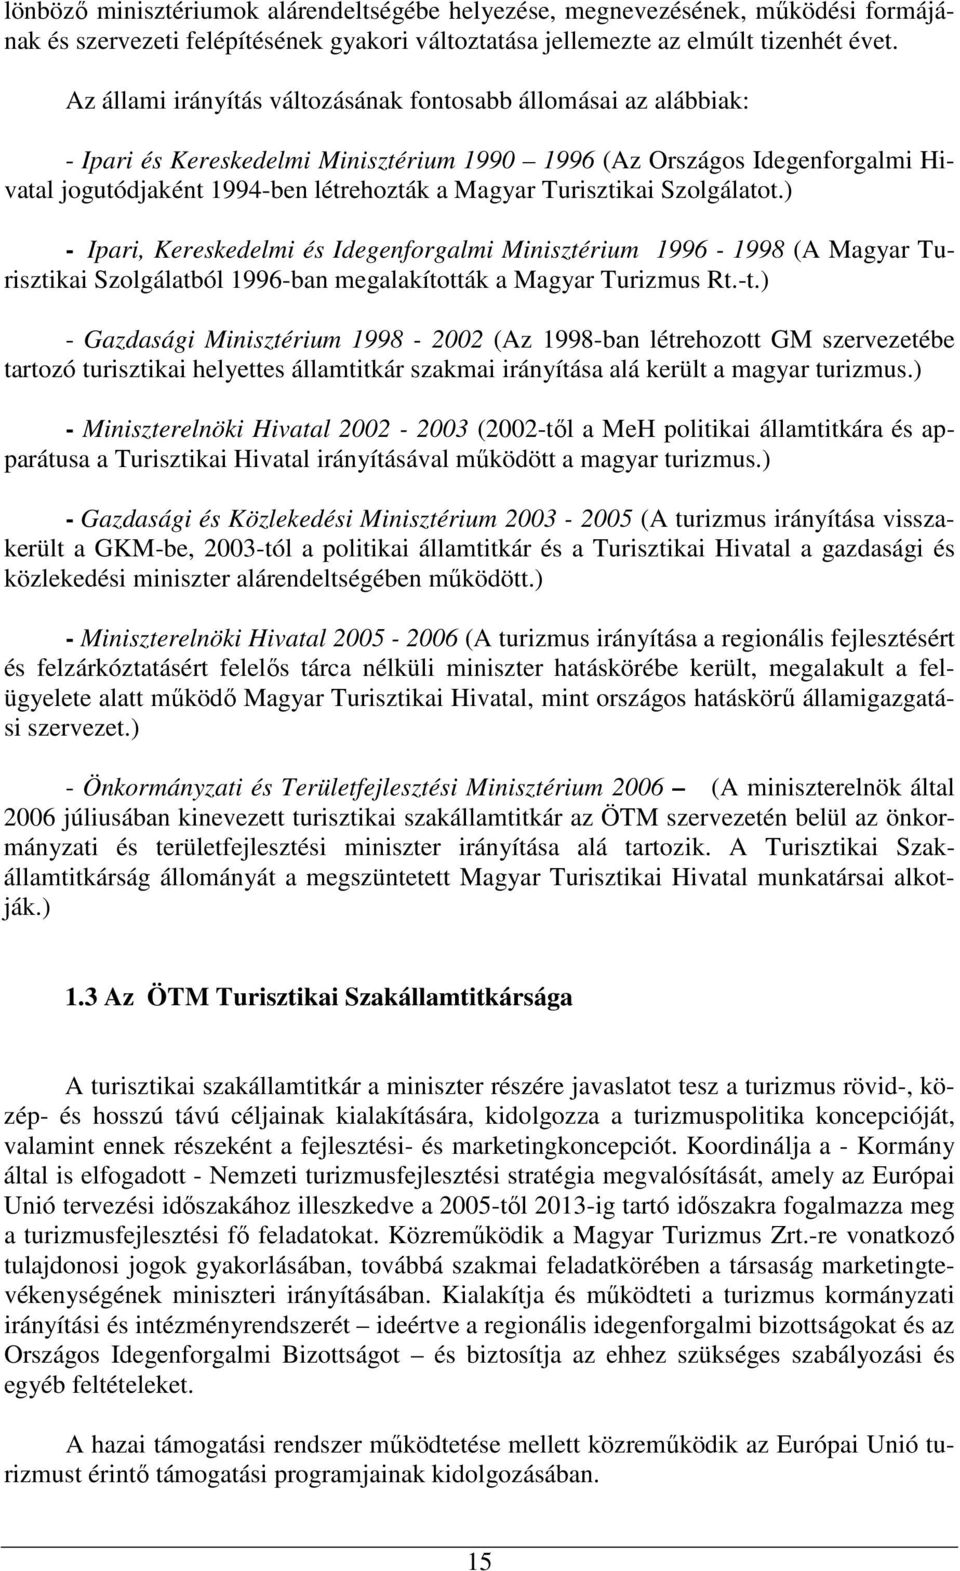 Turisztikai Szolgálatot.) - Ipari, Kereskedelmi és Idegenforgalmi Minisztérium 1996-1998 (A Magyar Turisztikai Szolgálatból 1996-ban megalakították a Magyar Turizmus Rt.-t.